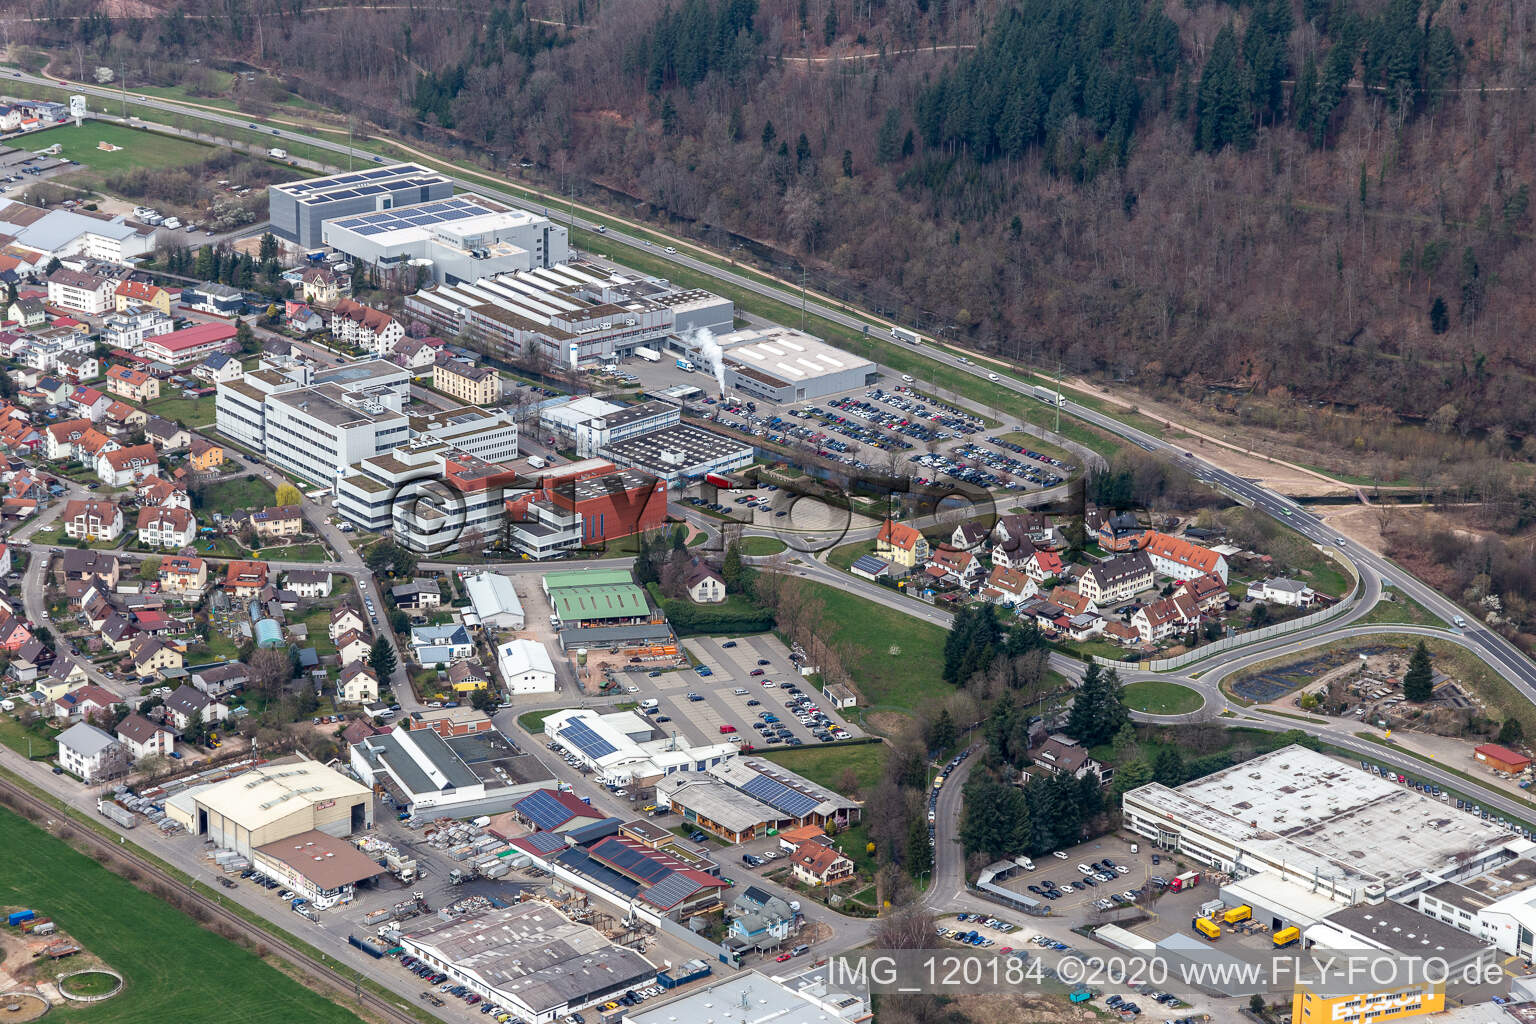 Vue aérienne de Bureaux, bâtiments administratifs, halls de production et parking sur le terrain de l'entreprise de technologie de mesure Endress et Hauser à Wiesental à Maulburg dans le département Bade-Wurtemberg, Allemagne